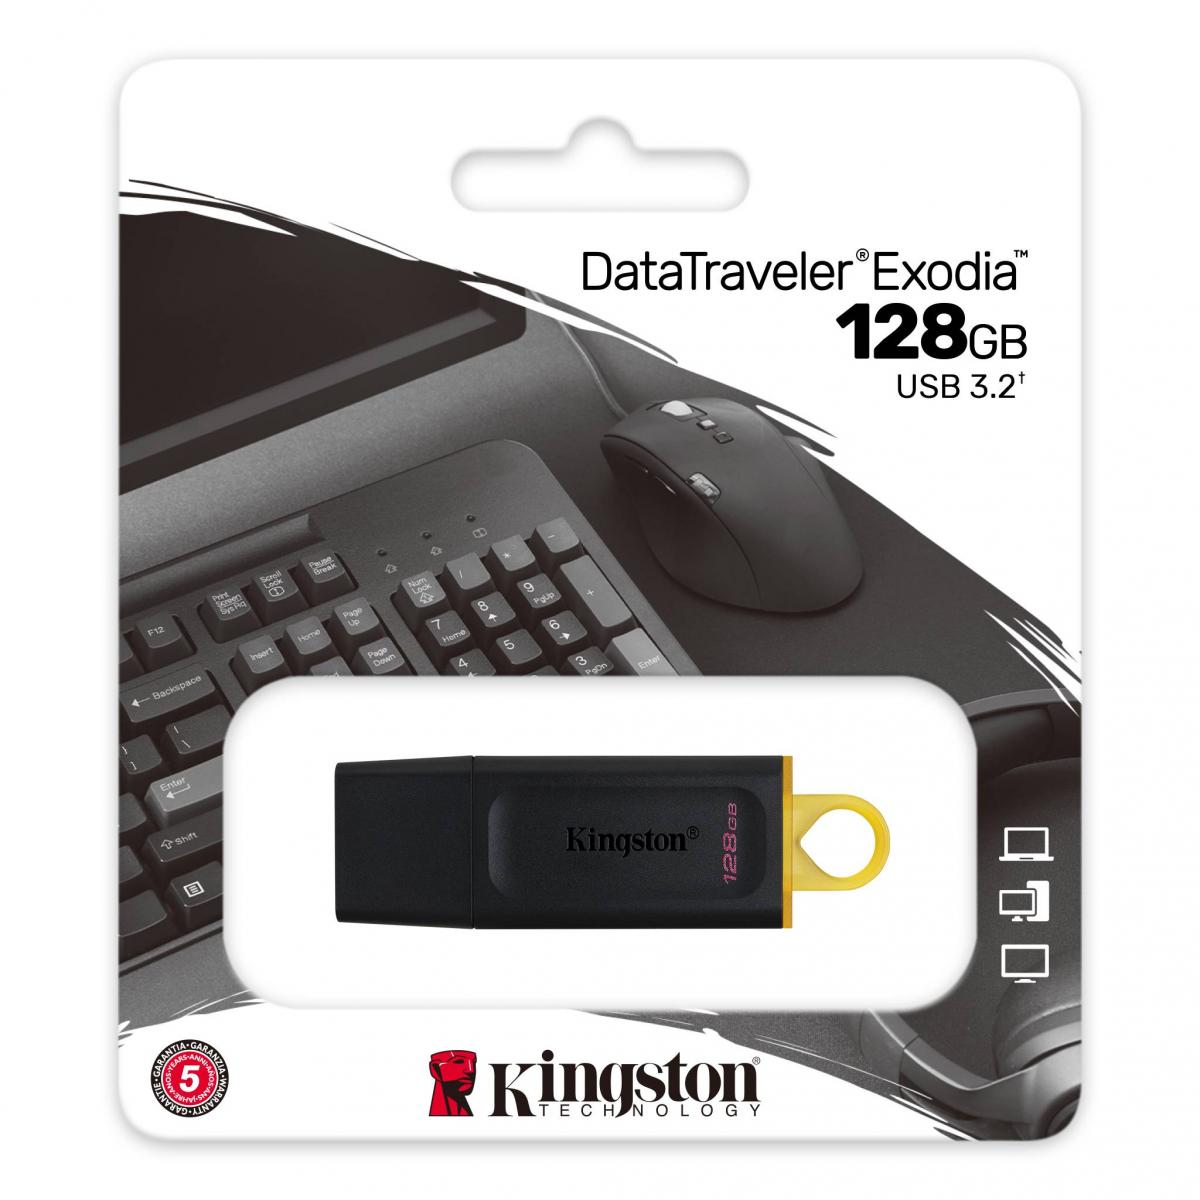 KINGSTON USB FLASH DRIVE Kingston Flash 128GB DataTraveler Exodia - USB 3.2